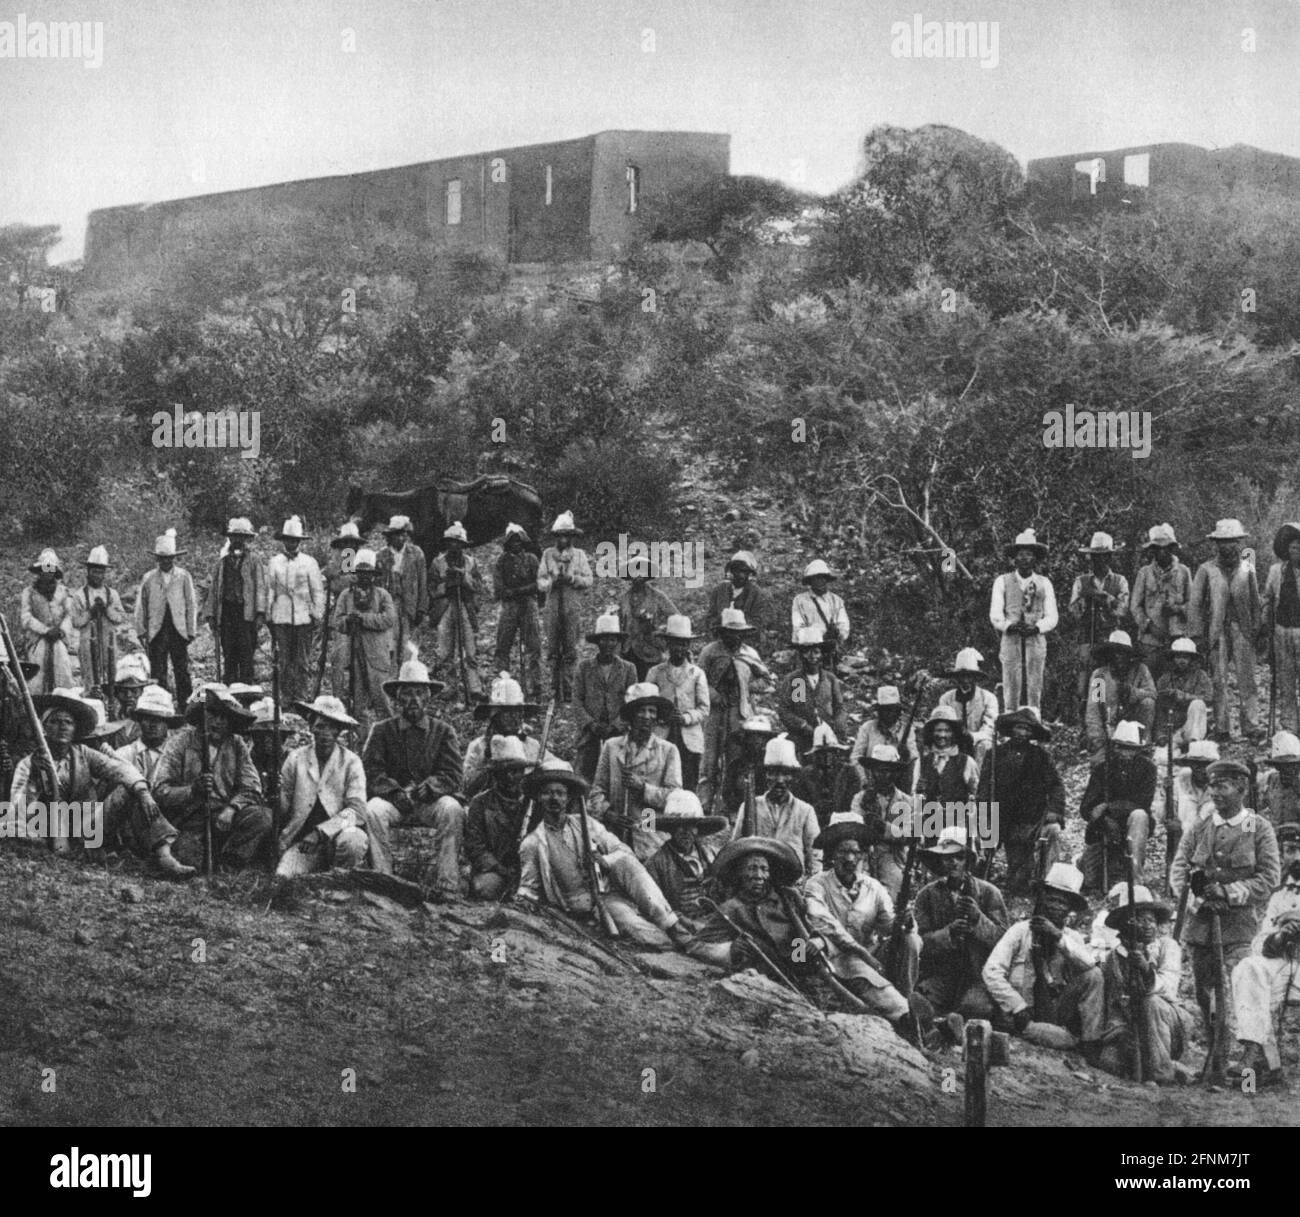 Colonialismo, África Sudoccidental alemana, levantamiento de Herero 1904, jefe Hendrik Witbooi con sus hombres Orlog, DERECHOS ADICIONALES-AUTORIZACIÓN-INFORMACIÓN-NO DISPONIBLE Foto de stock